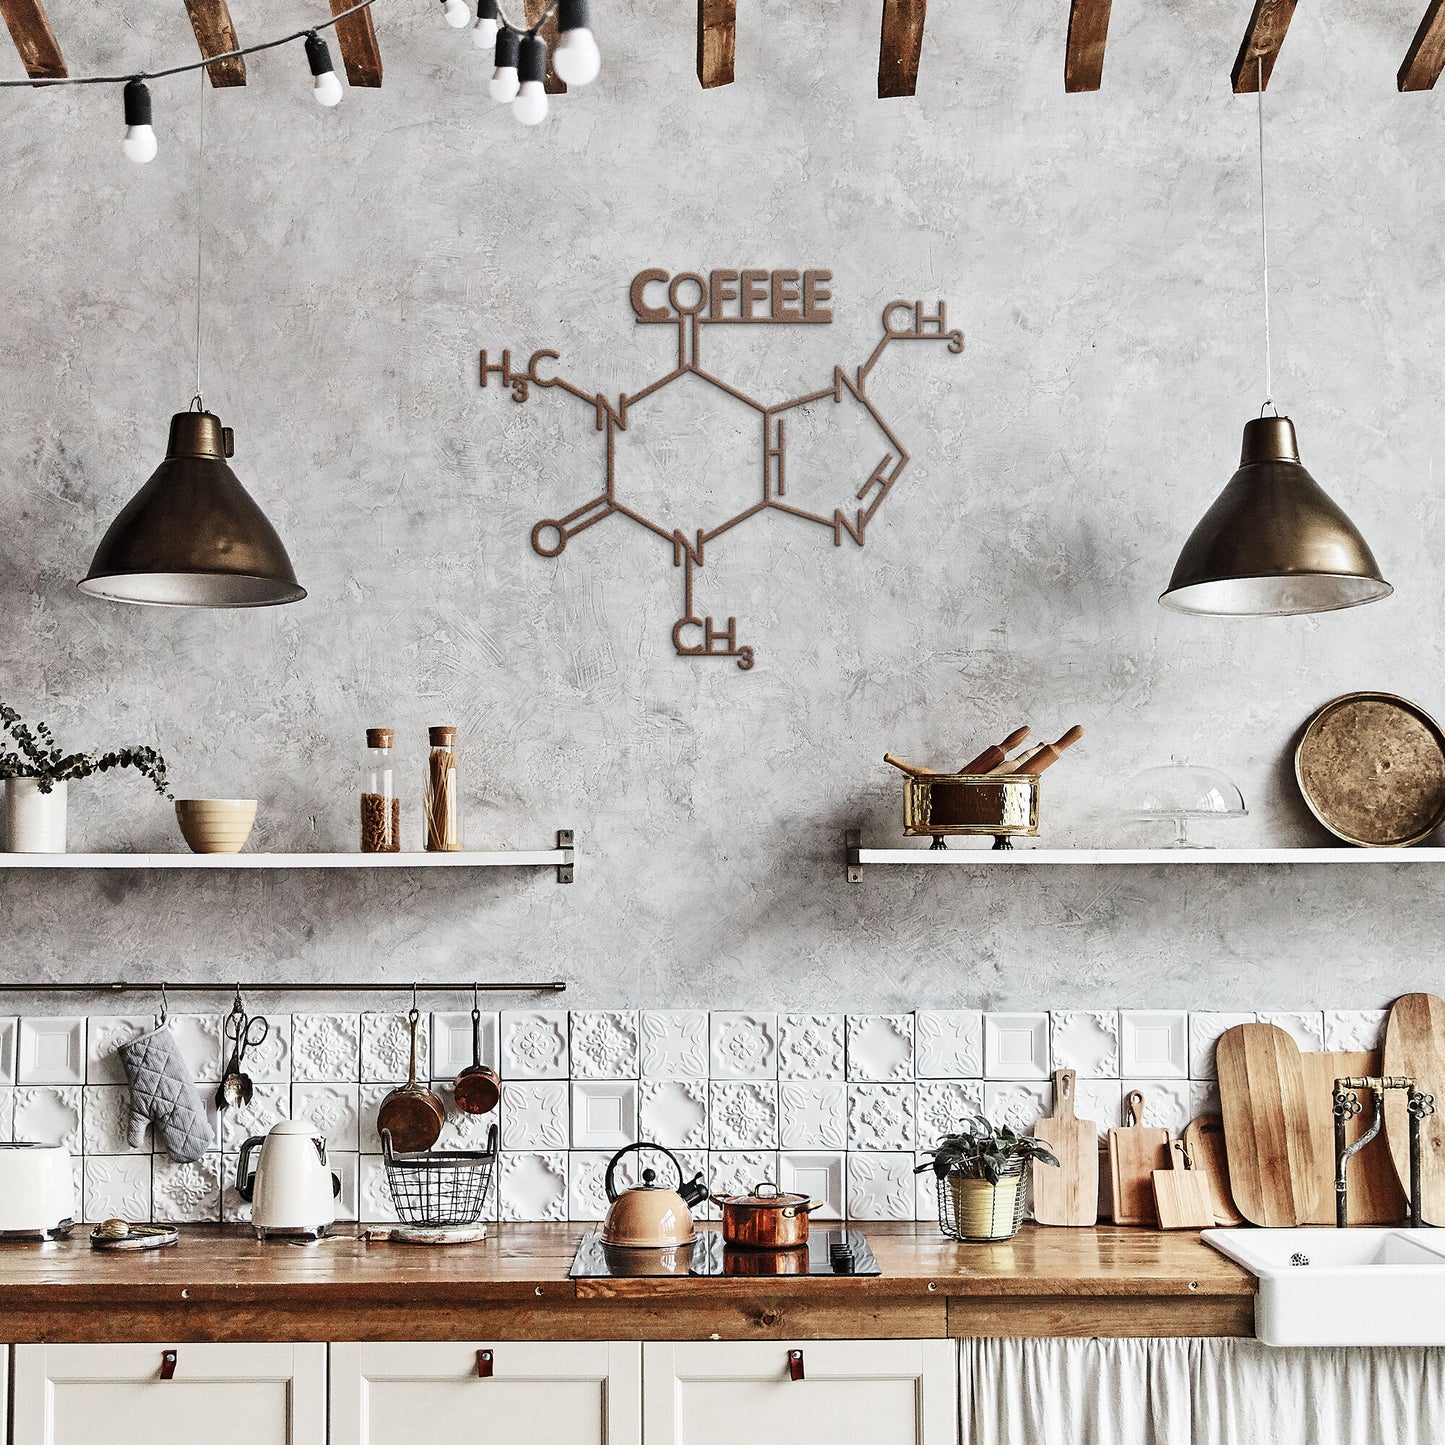 Coffee Molecule Metal Wall Art in copper in kitchen